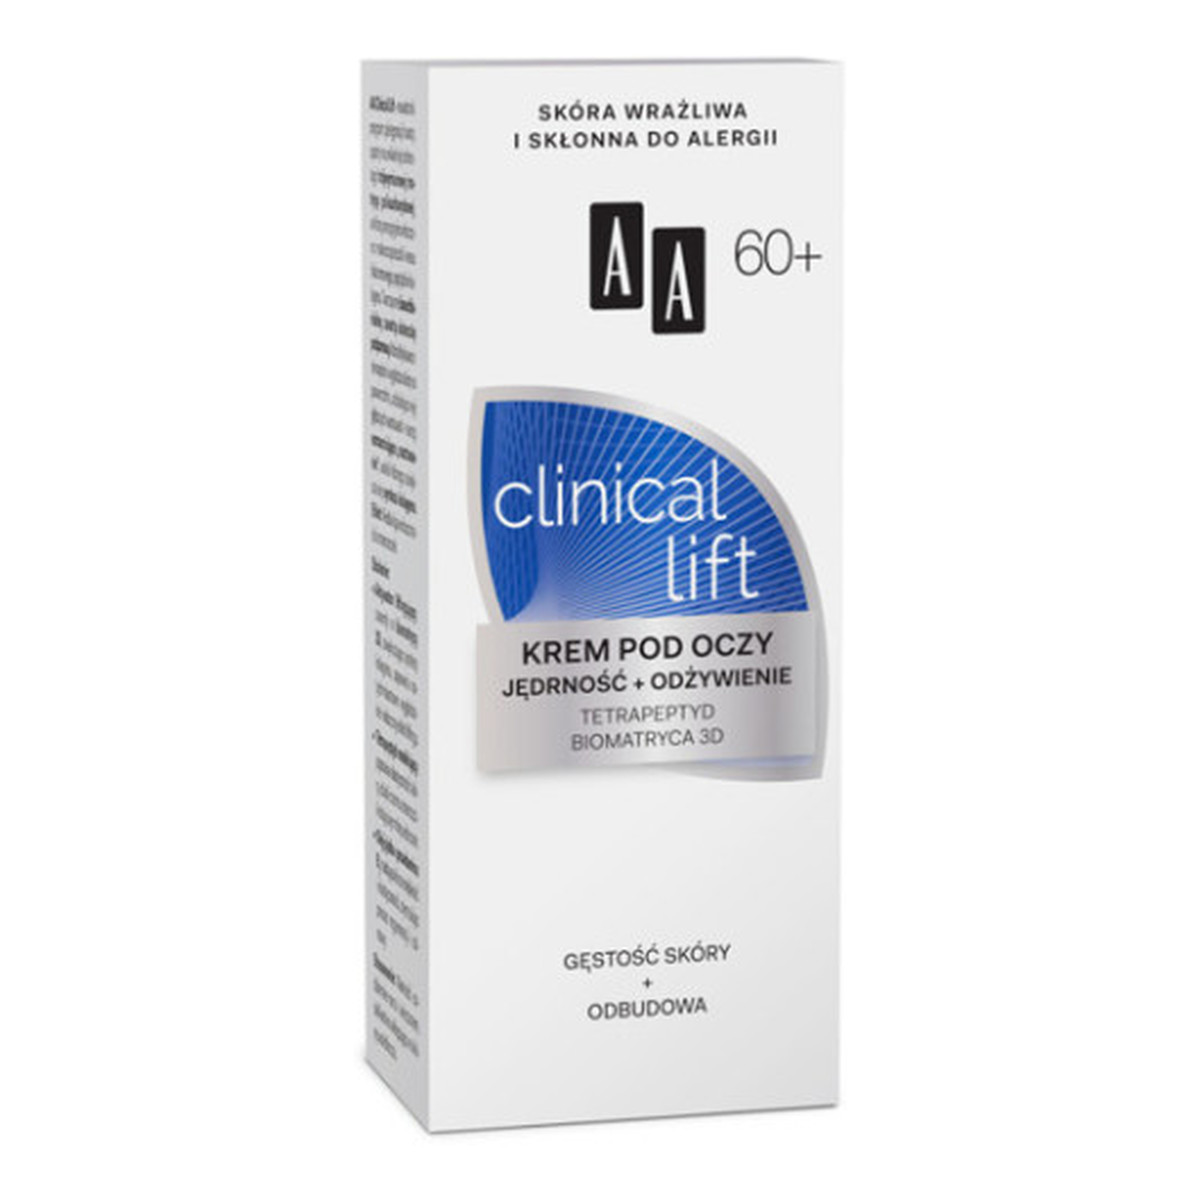 AA 60+ Clinical Lift Krem Pod Oczy Jędrność i Odżywienie 15ml